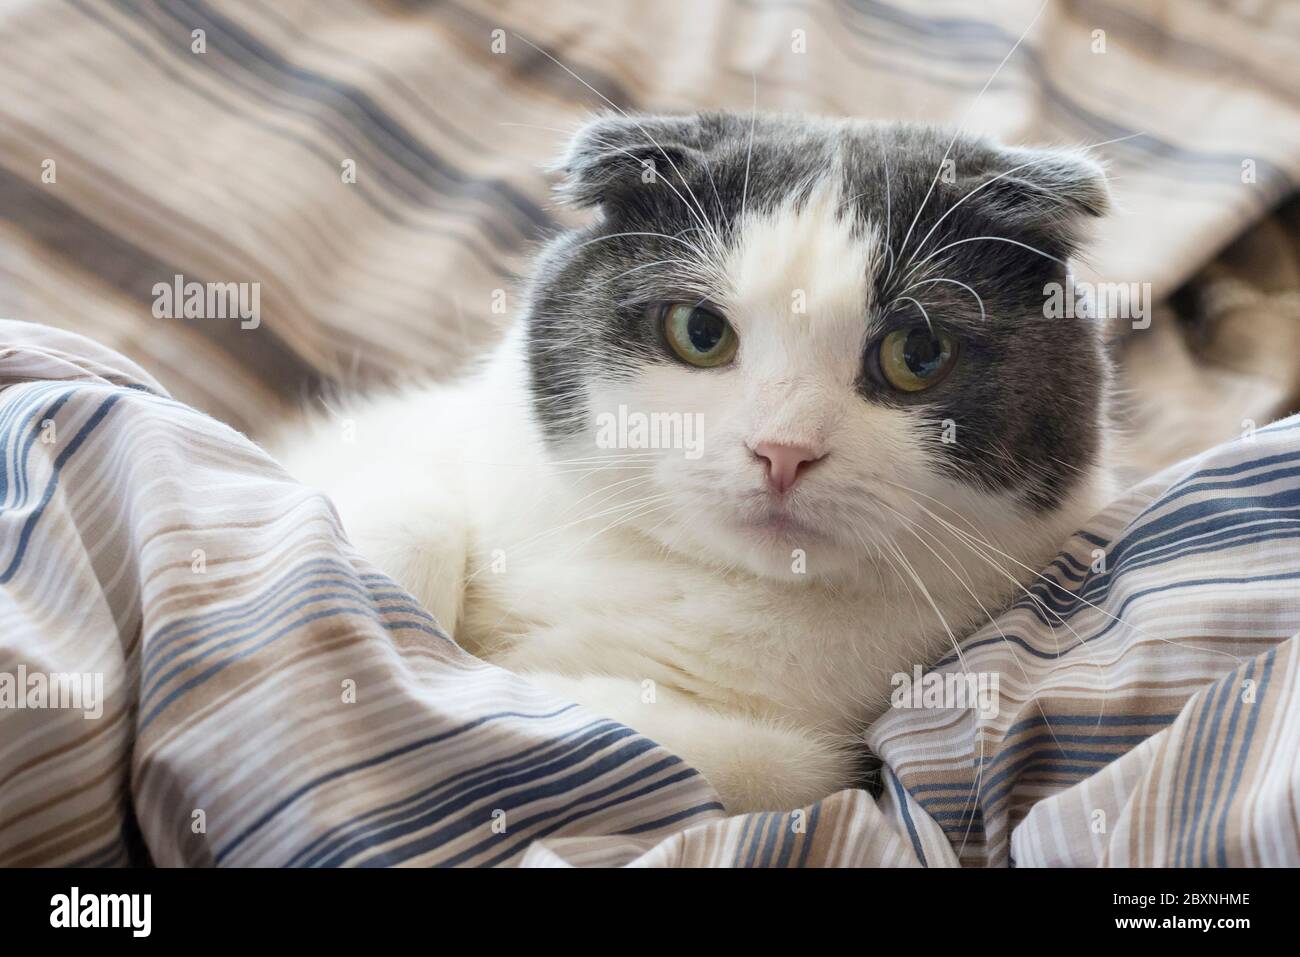 Eine müde lustige Katze liegt im Bett Stockfotografie - Alamy